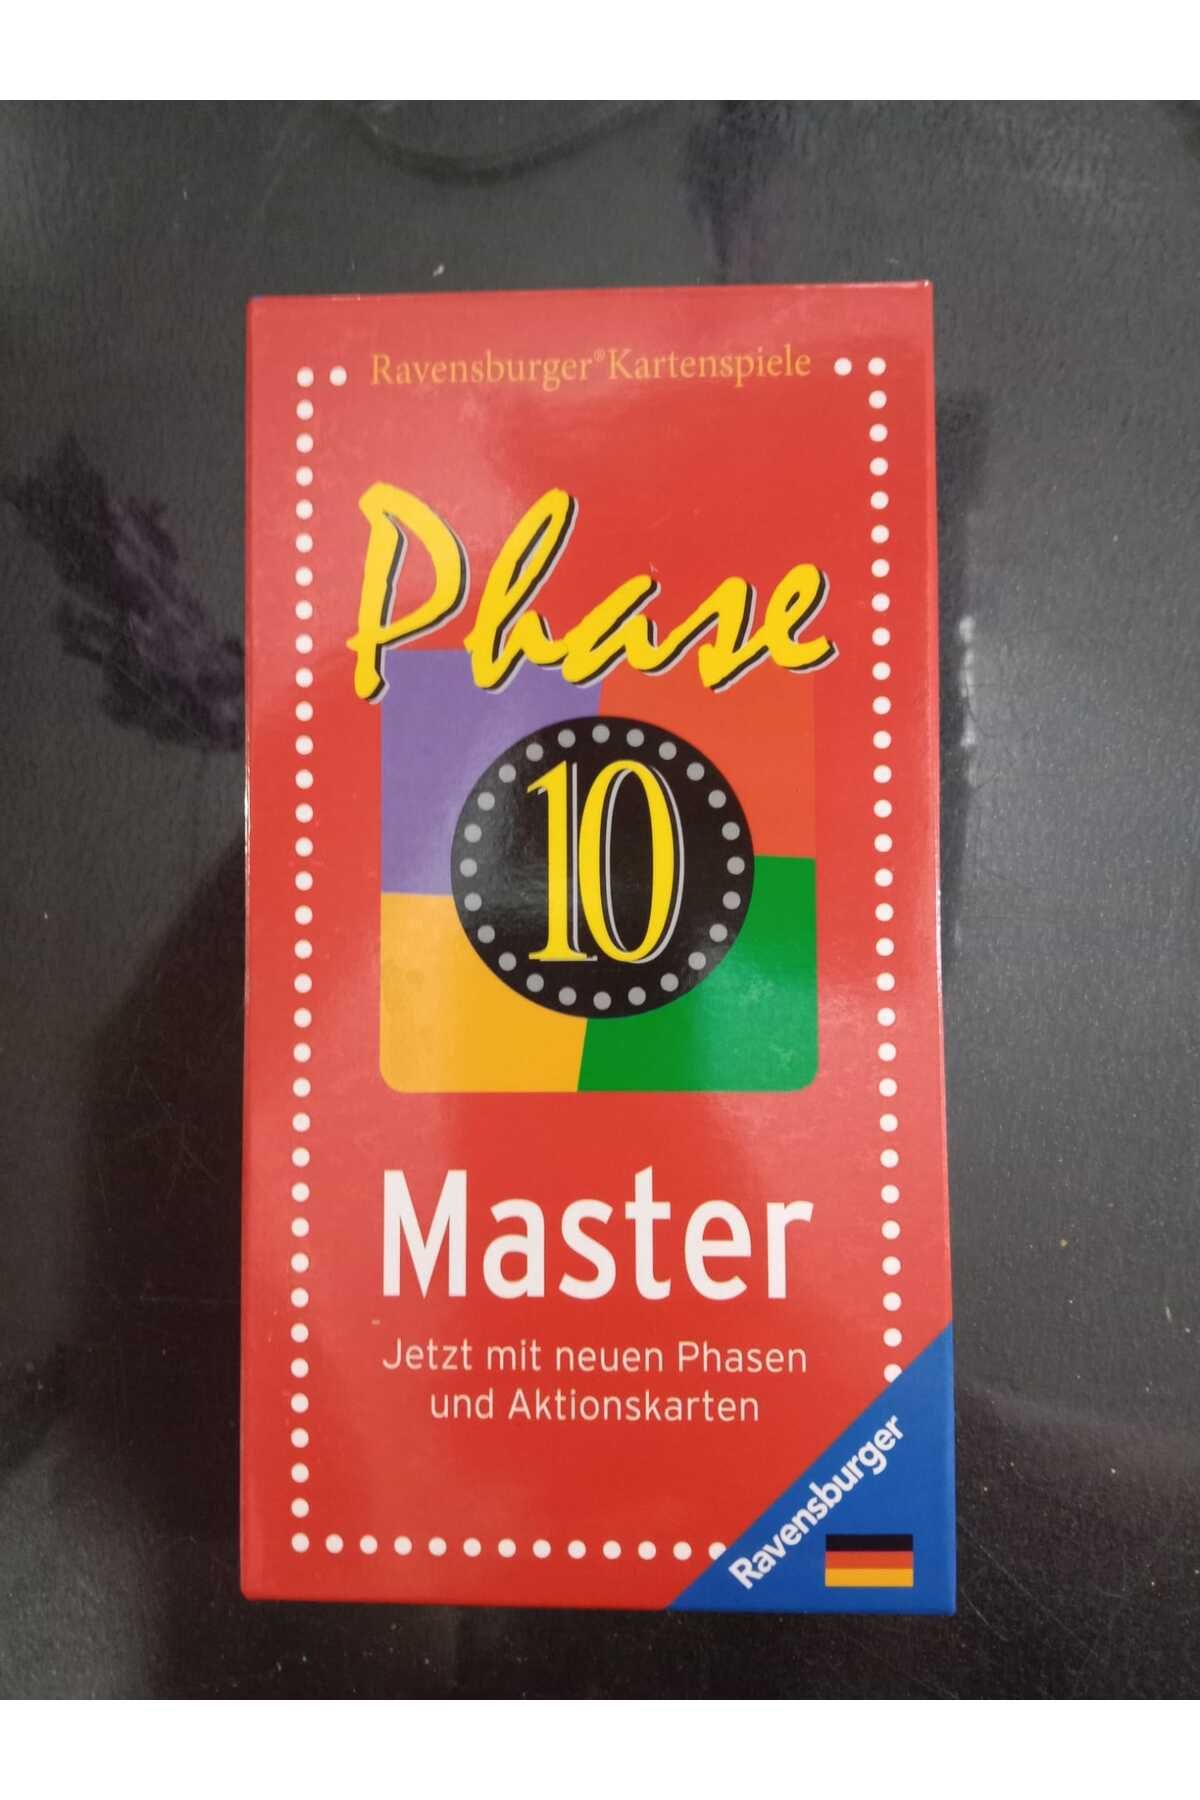 Phase 10 master